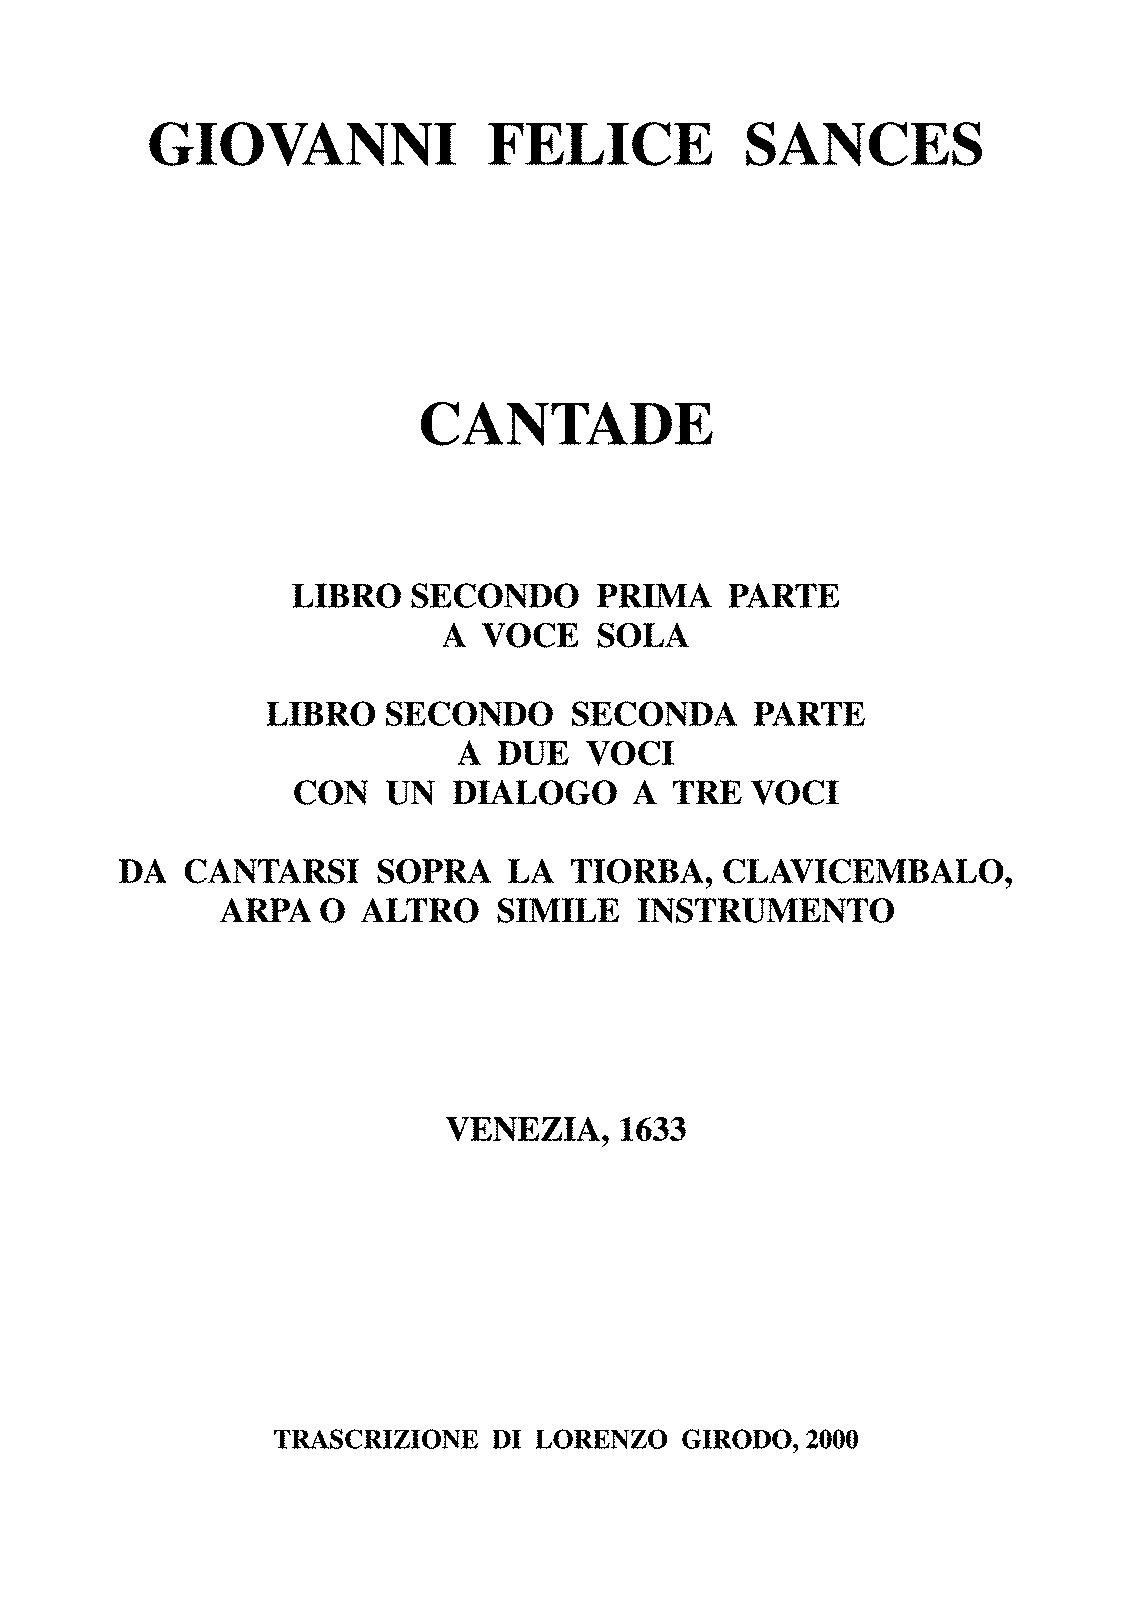 Cantade, Book 2 (Sances, Giovanni Felice) - IMSLP